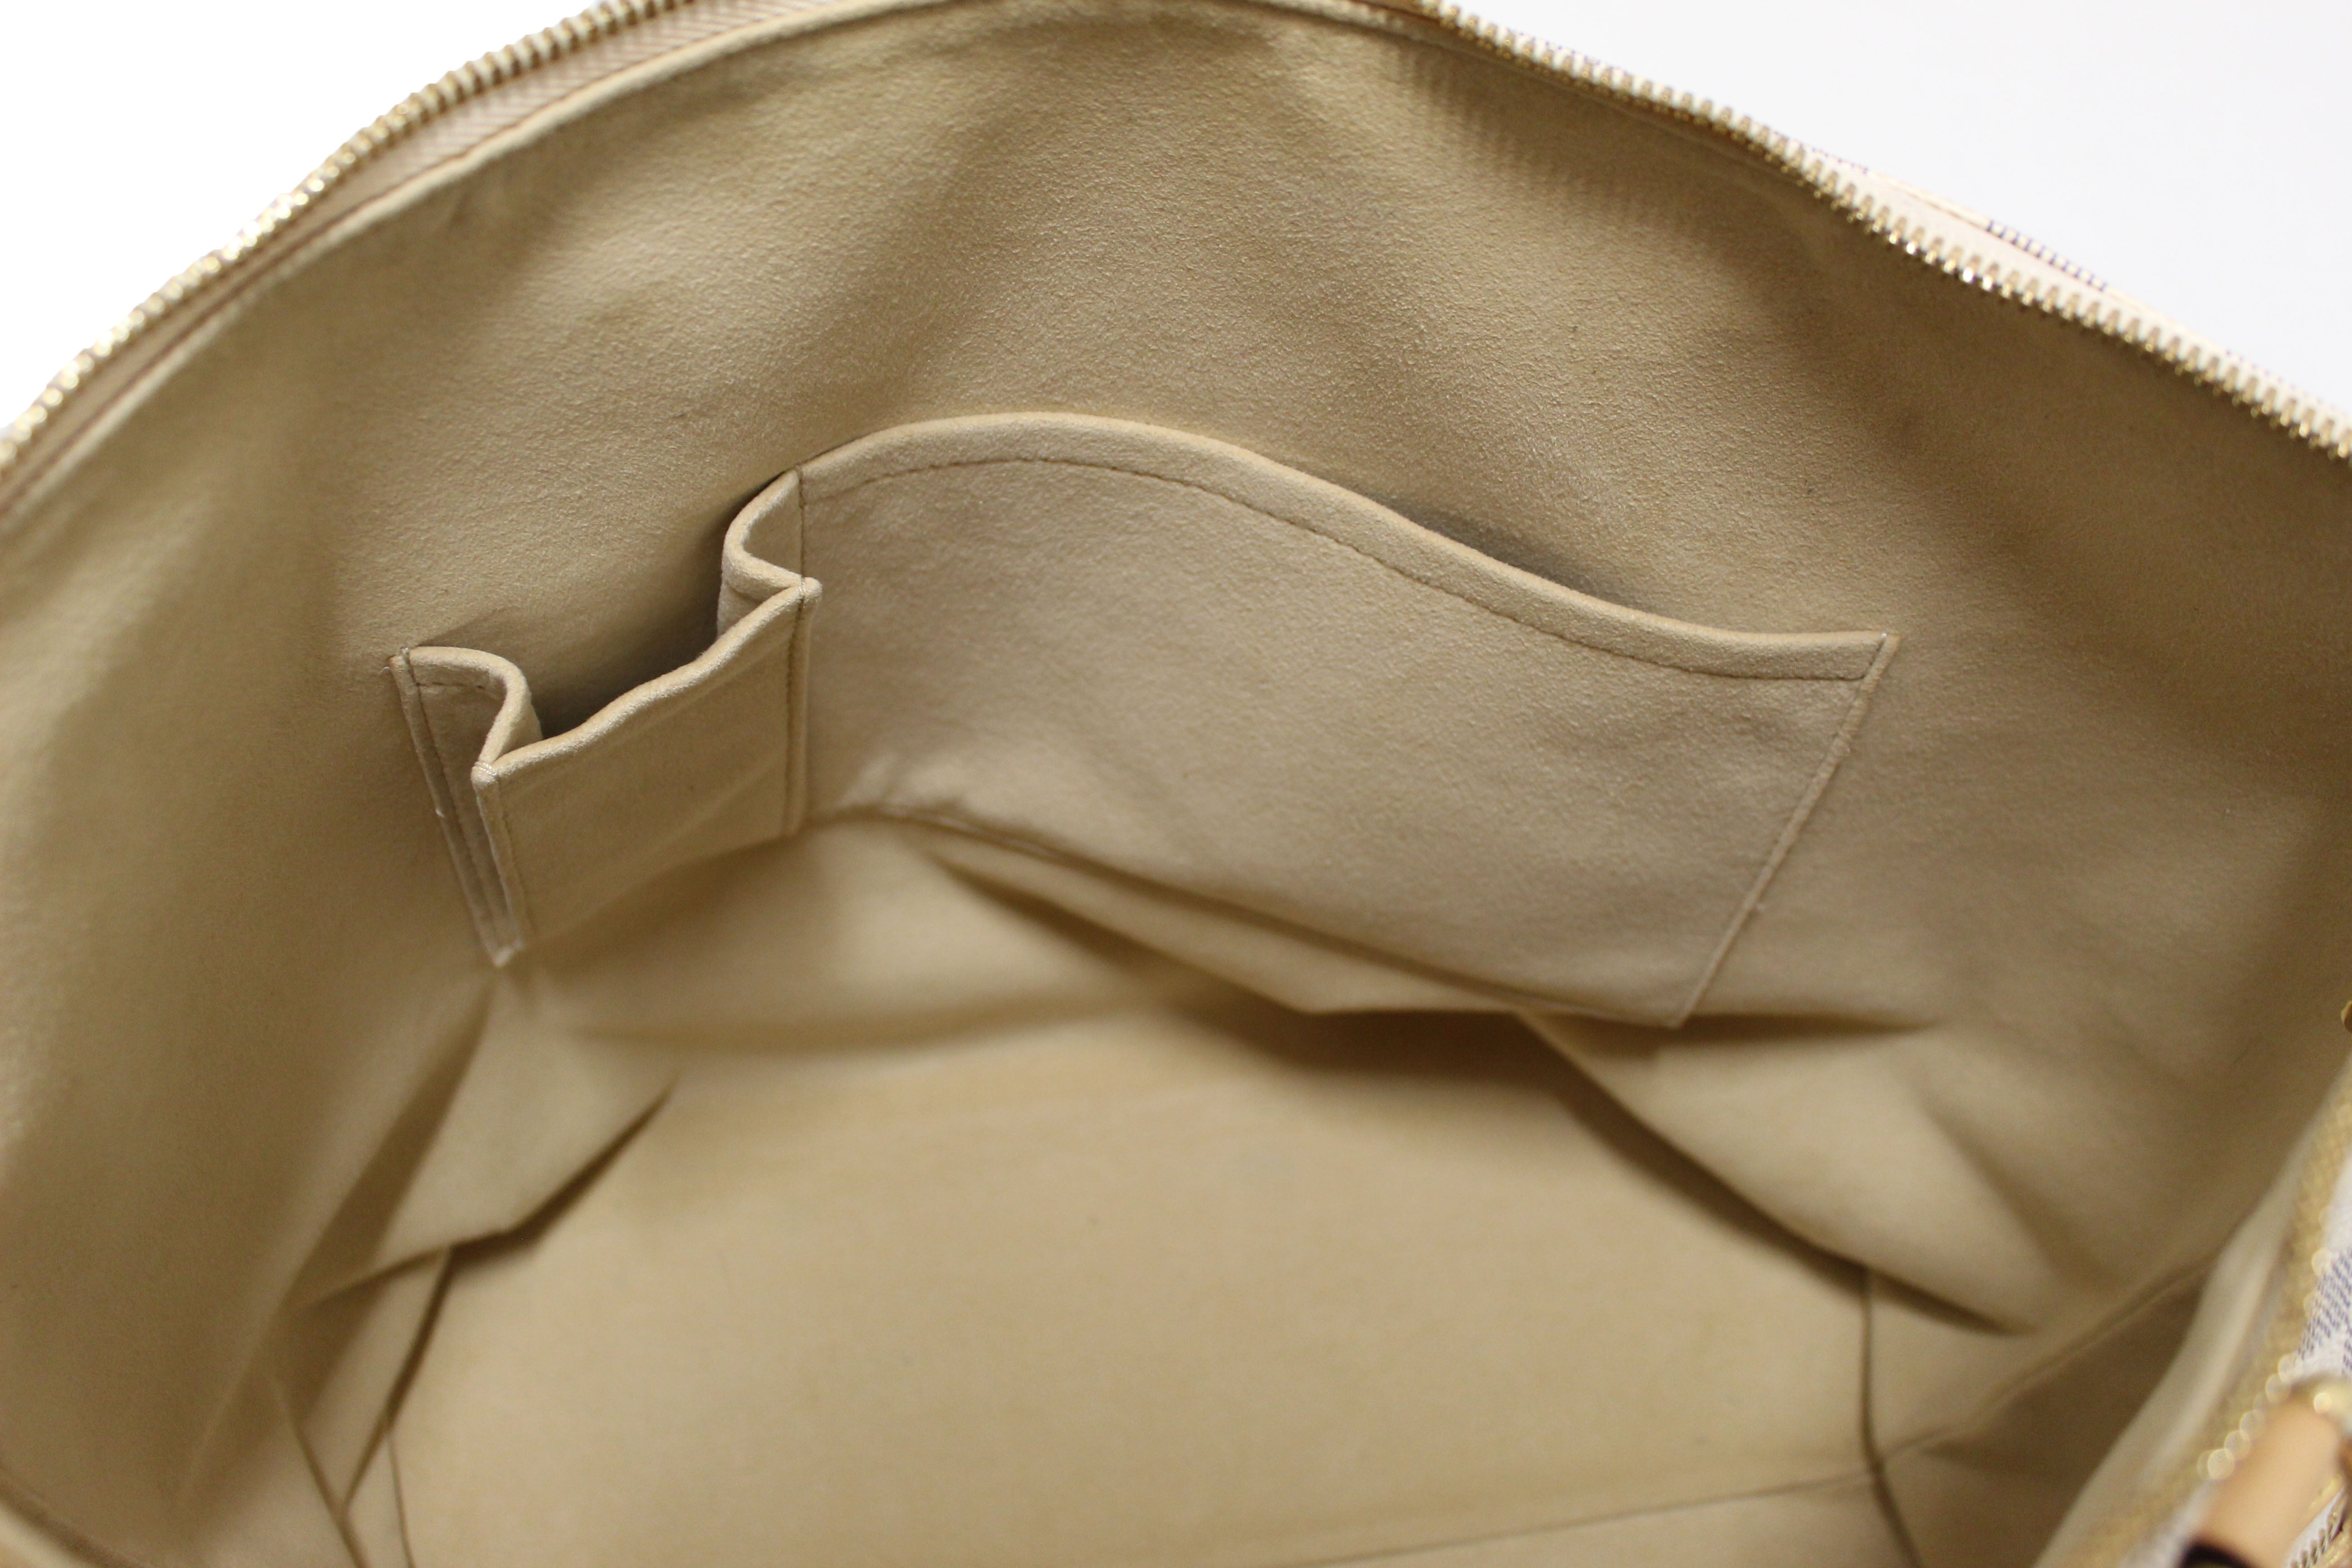 Authentic Louis Vuitton Damier Azur Saleya GM Shoulder Bag